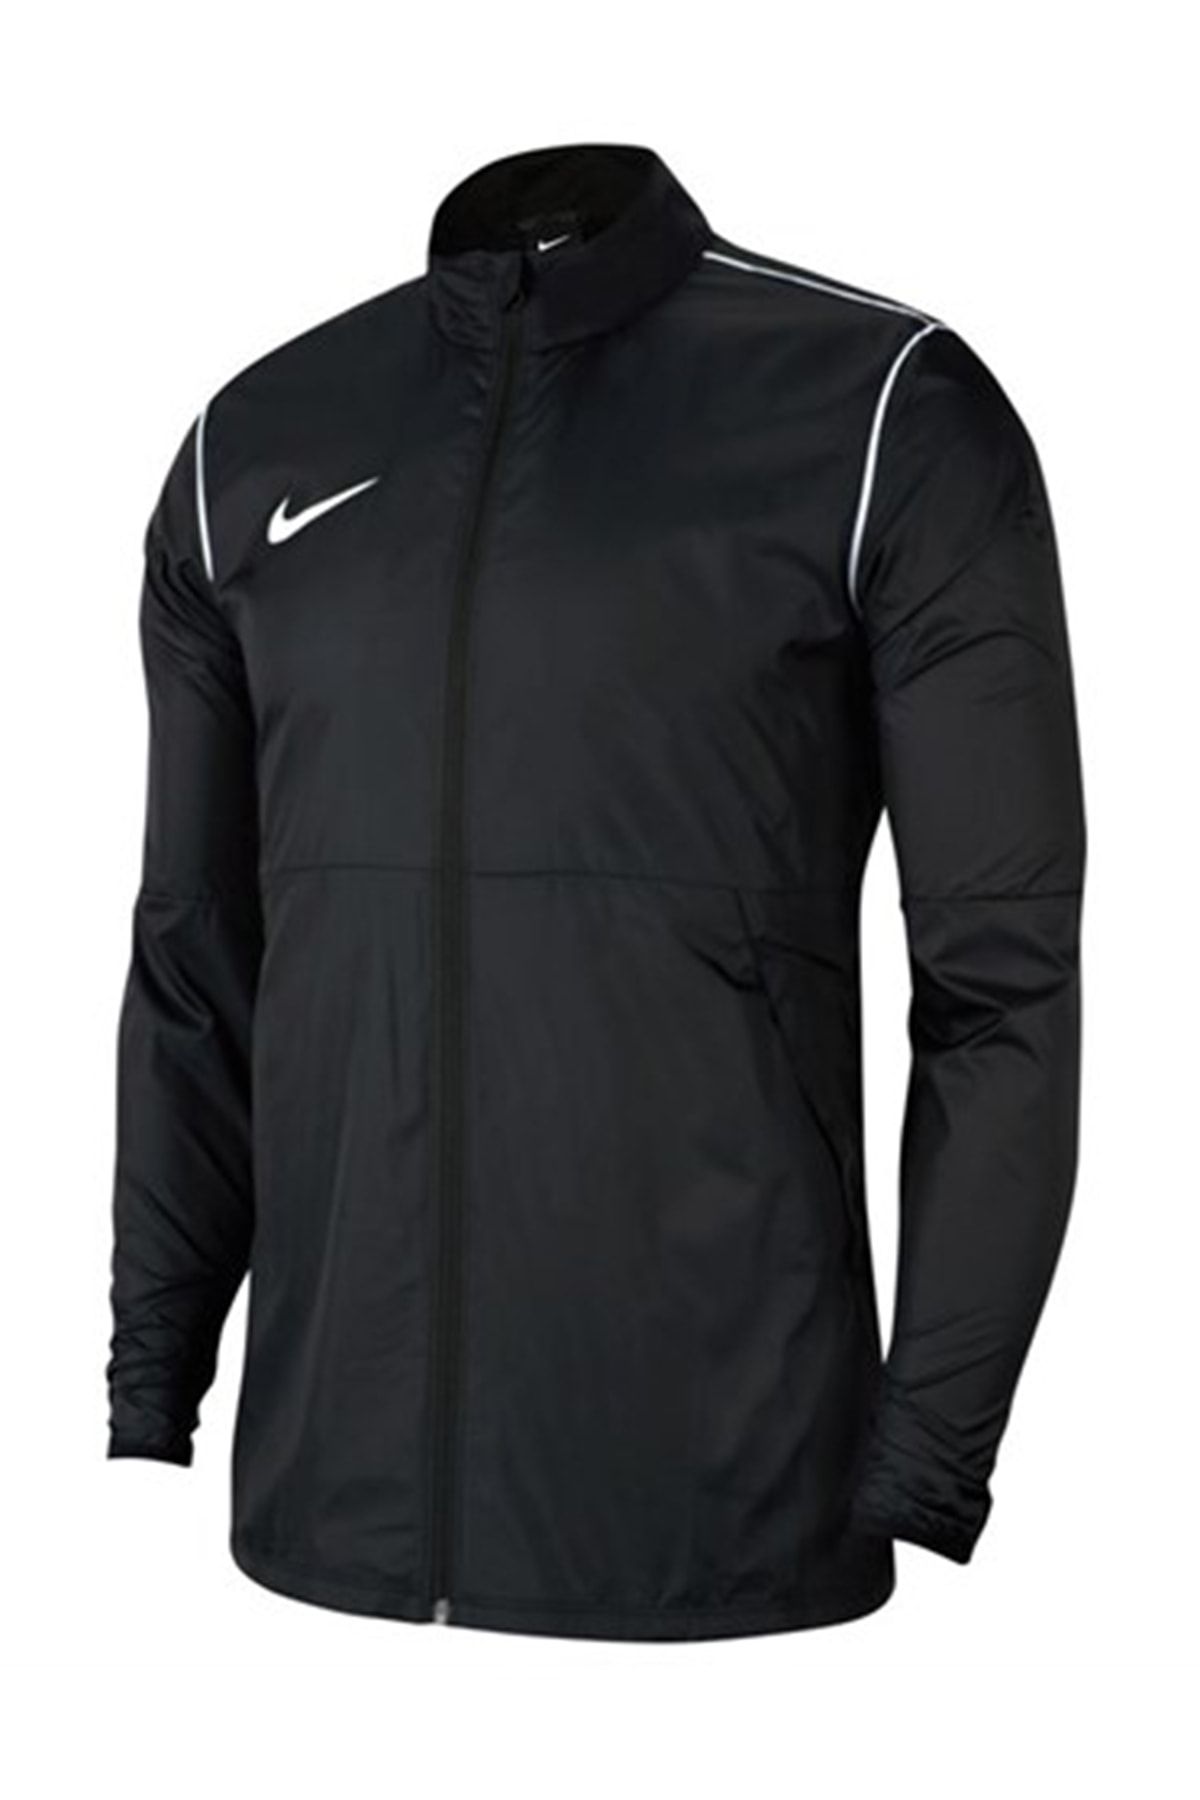 Nike Erkek Siyah Yağmurluk Bv6881-010